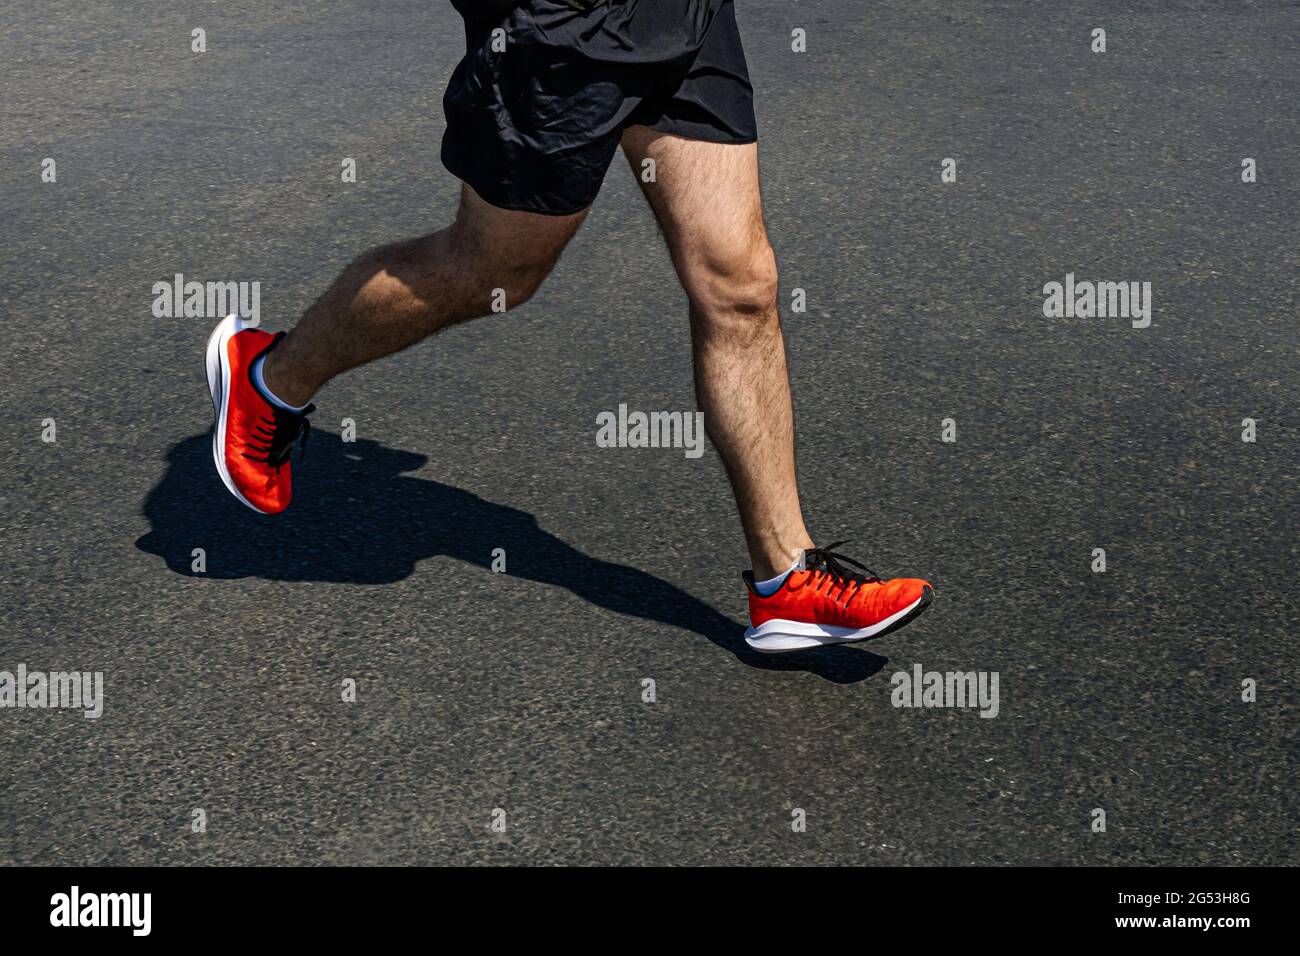 jambes coureur homme dans des chaussures orange vif courir sur l'asphalte foncé Banque D'Images